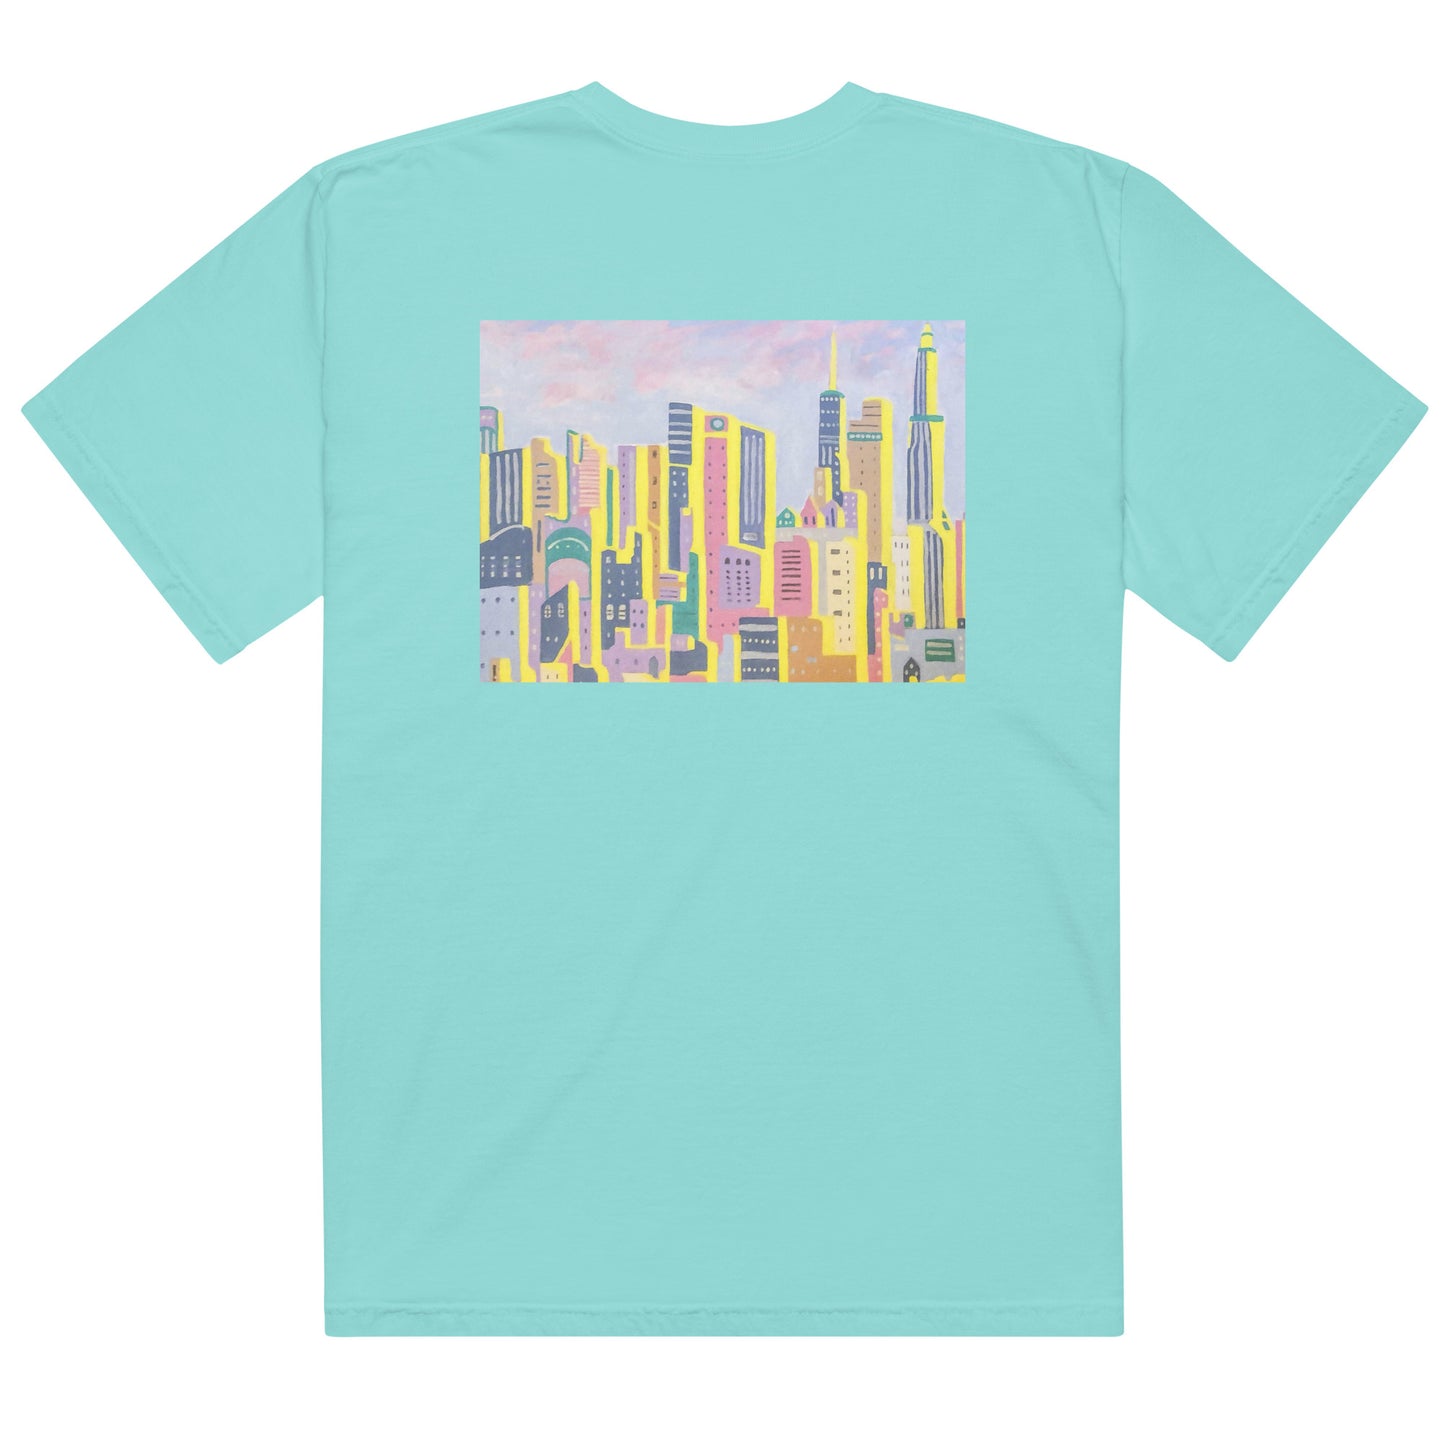 NEW YORK T-SHIRT-  Unisex garment-dyed heavyweight t-shirt